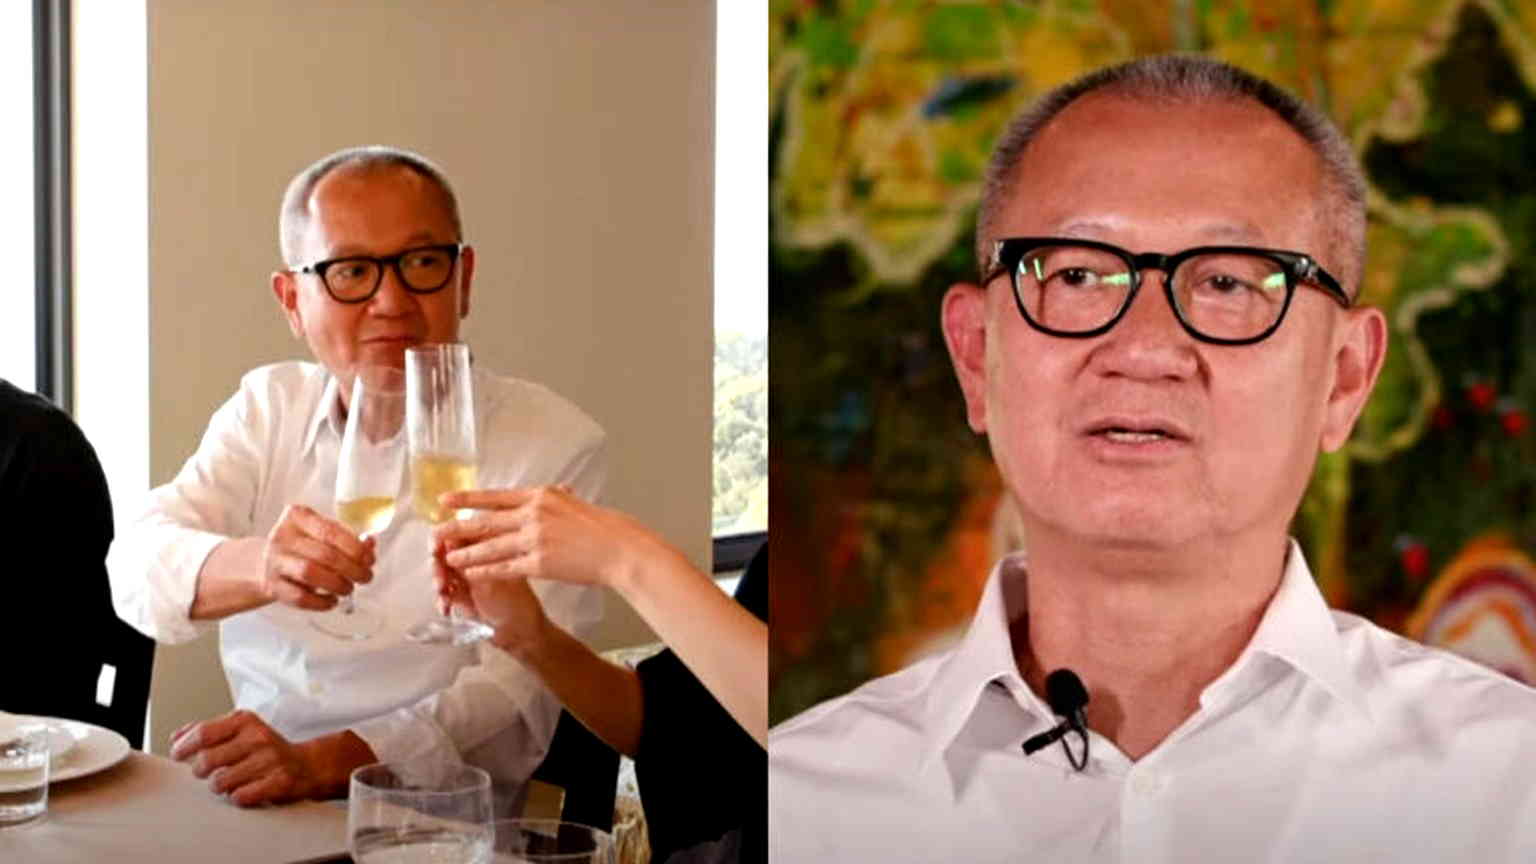 Taiwan billionaire puts 25,000 wine bottles worth $50 million on auction